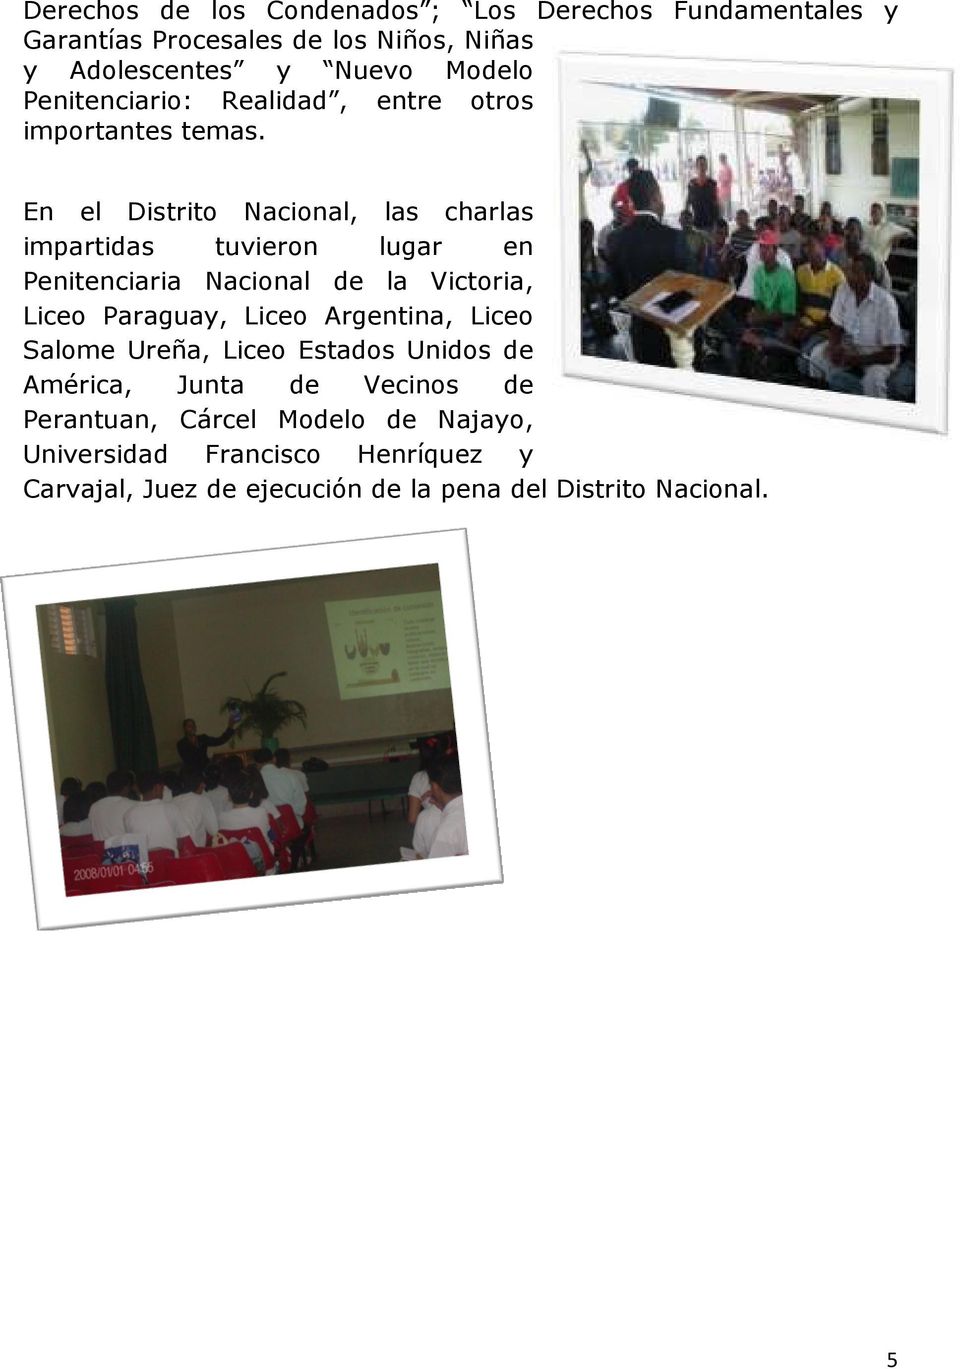 En el Distrito Nacional, las charlas impartidas tuvieron lugar en Penitenciaria Nacional de la Victoria, Liceo Paraguay, Liceo